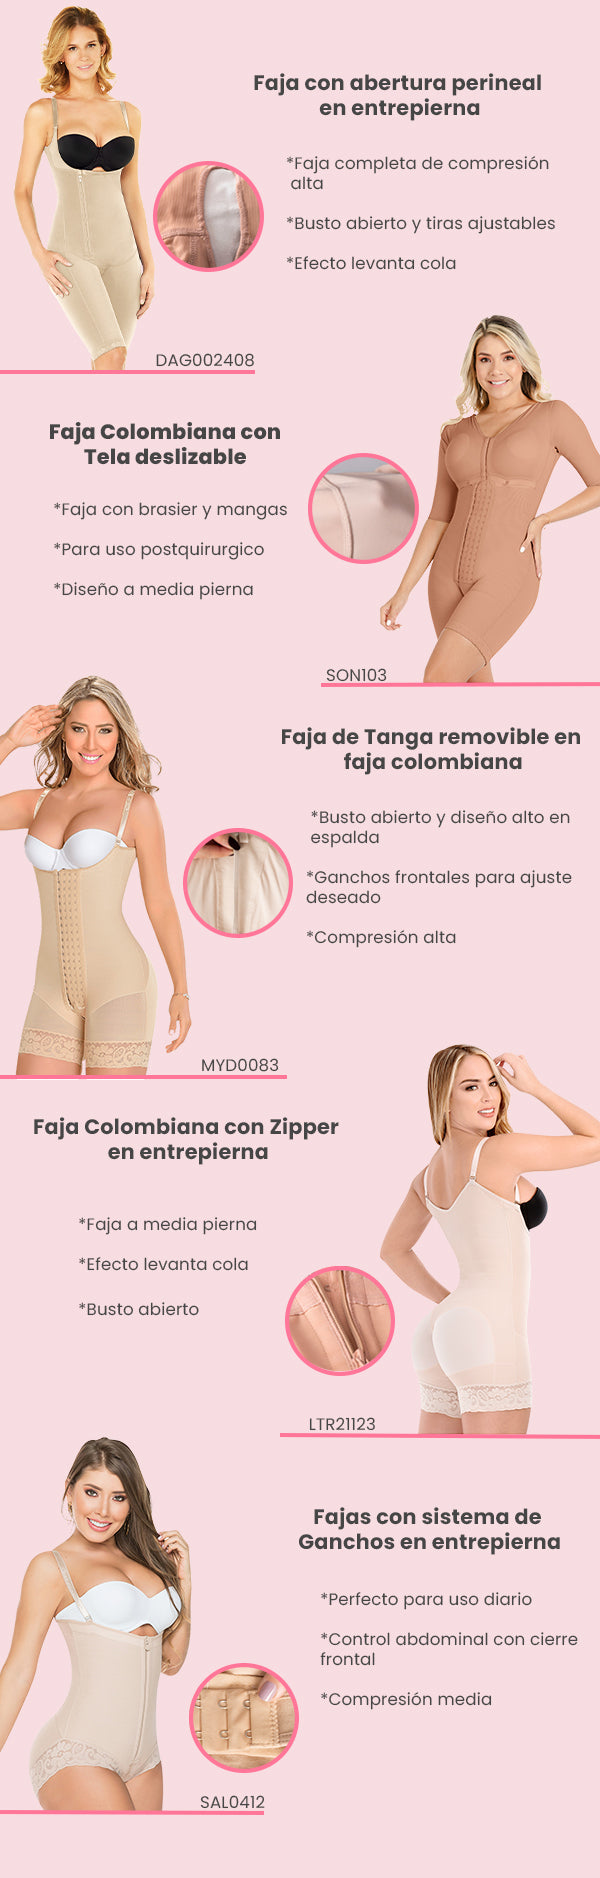 faja entera colombiana puedes usarlo con todo tipo de ropa, es cómoda